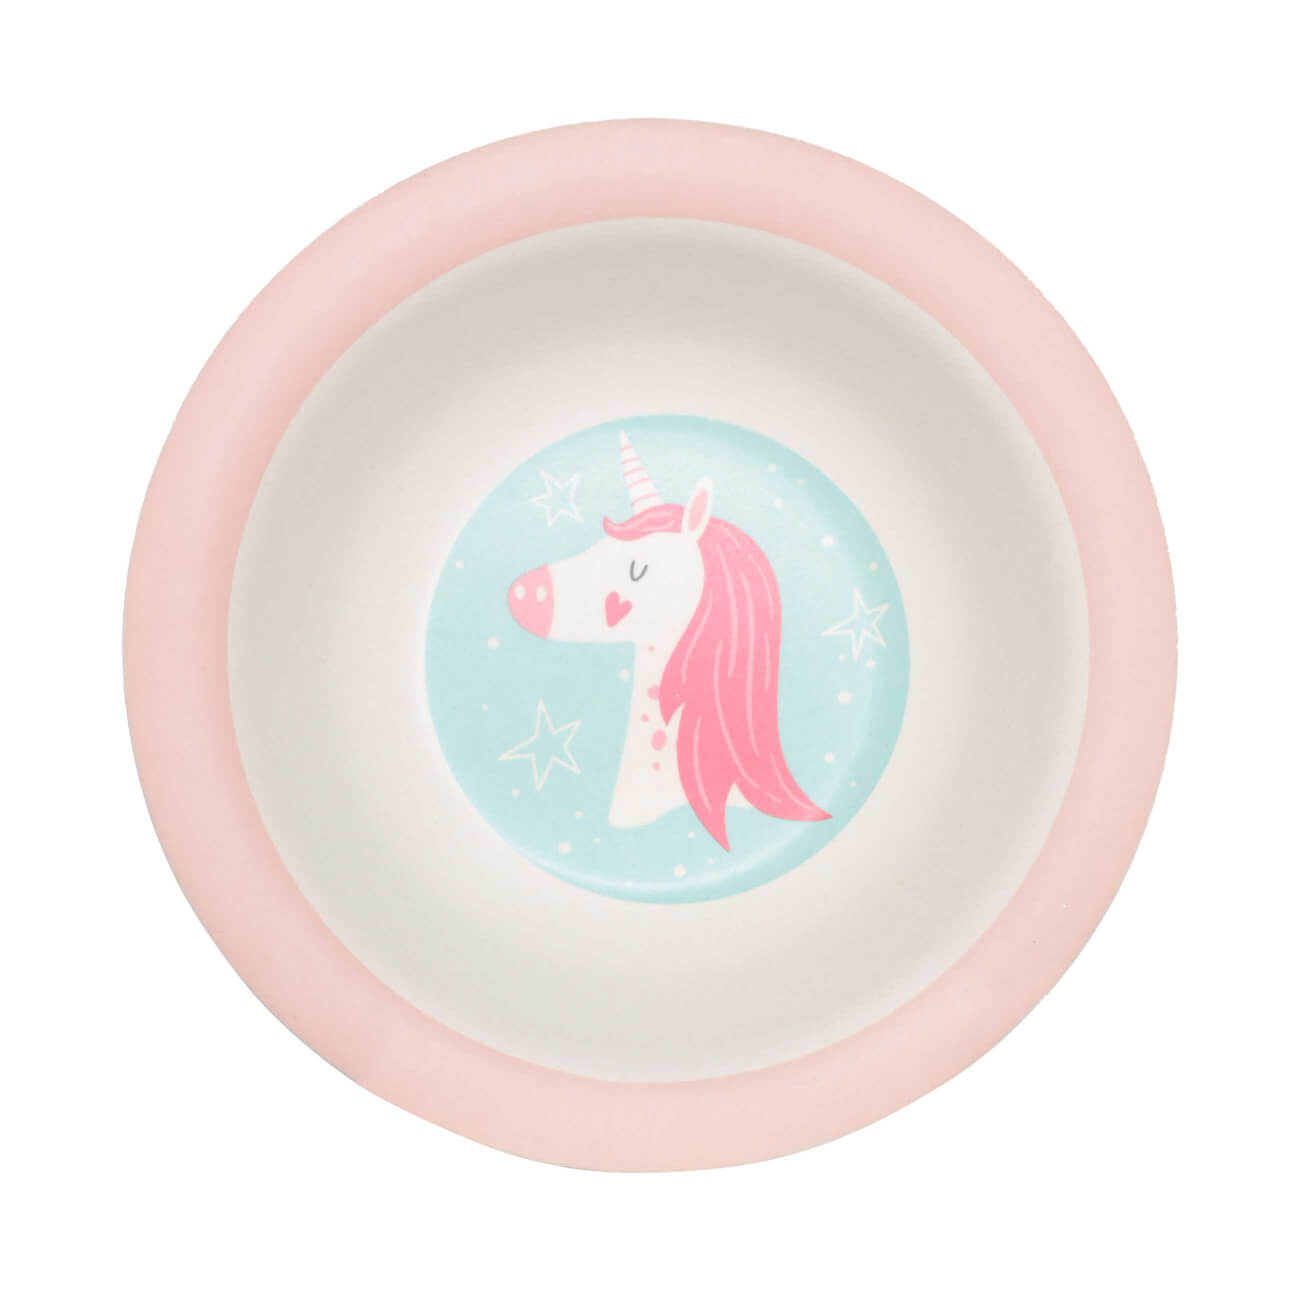 Тарелка суповая, детская, 15 см, бамбук, розово-мятная, Единорог и звезды, Unicorn тарелка суповая детская 15х4 см бамбук розовая единорог unicorn